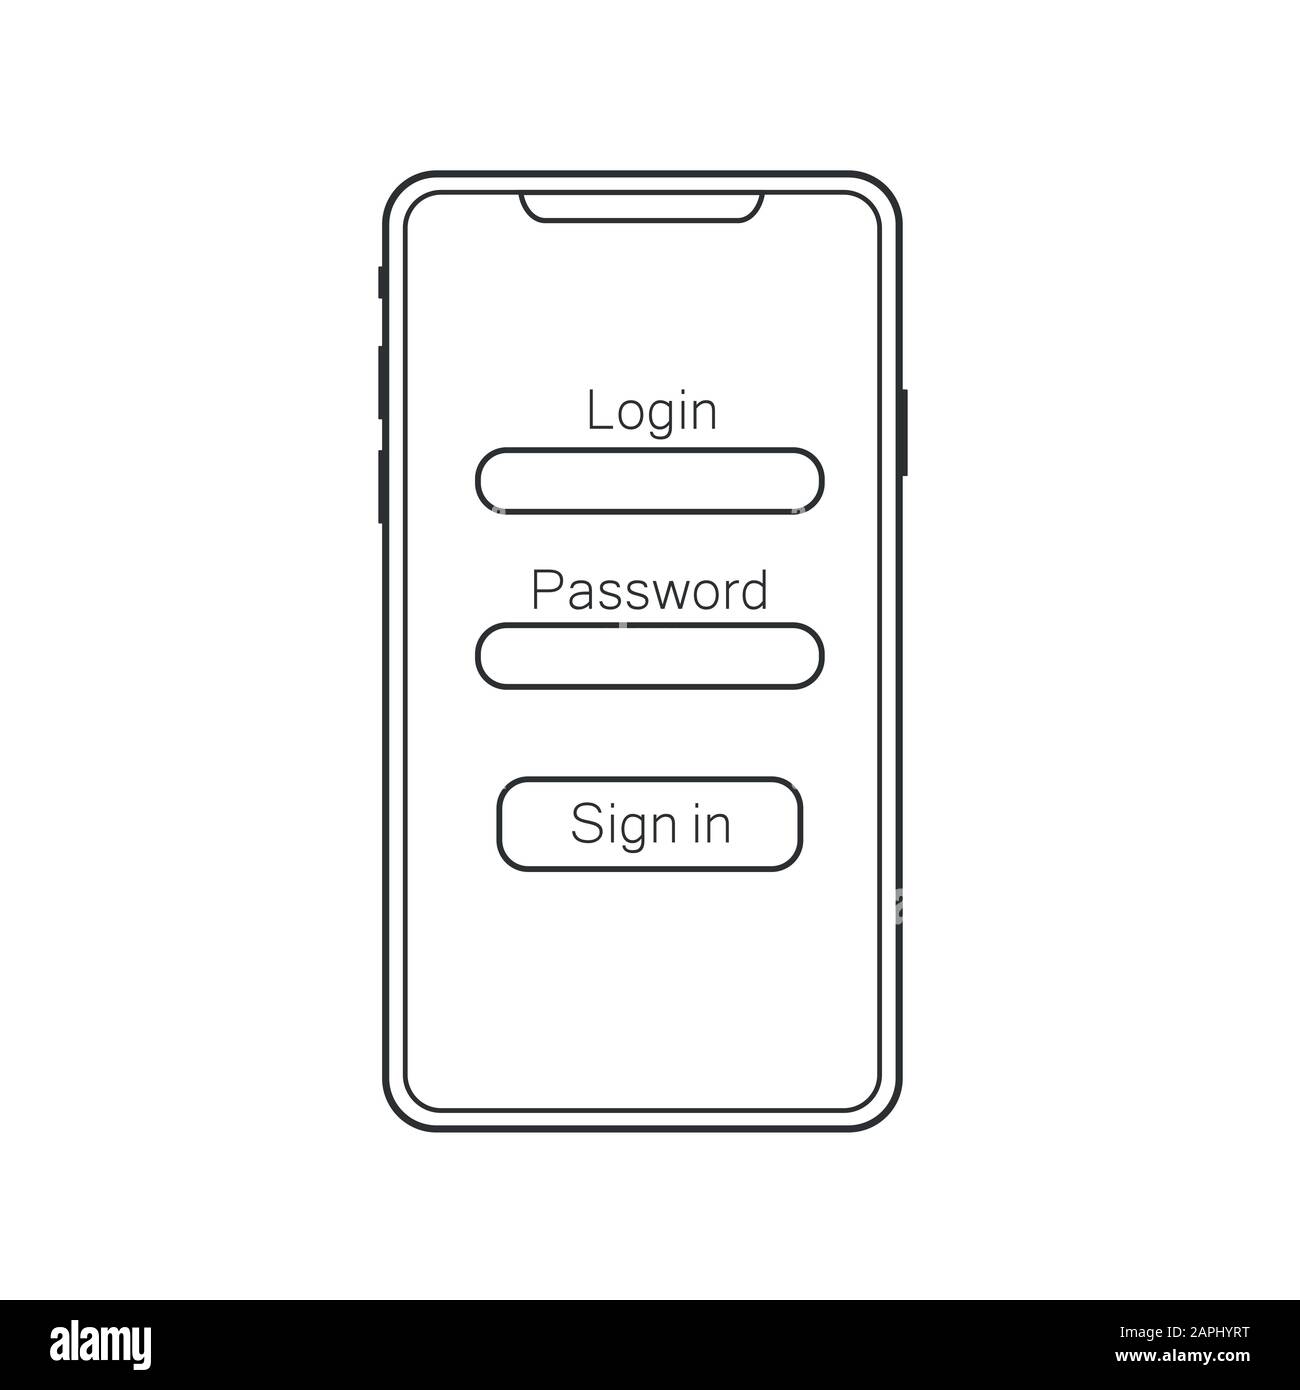 UI, UX und GUI-Layout für Materialdesign mit verschiedenen Anmeldebildschirmen, einschließlich Konto- und Anmeldefunktionen für mobile Anwendungen und Reaktionsschnelle Website. EPS 10 Stock Vektor